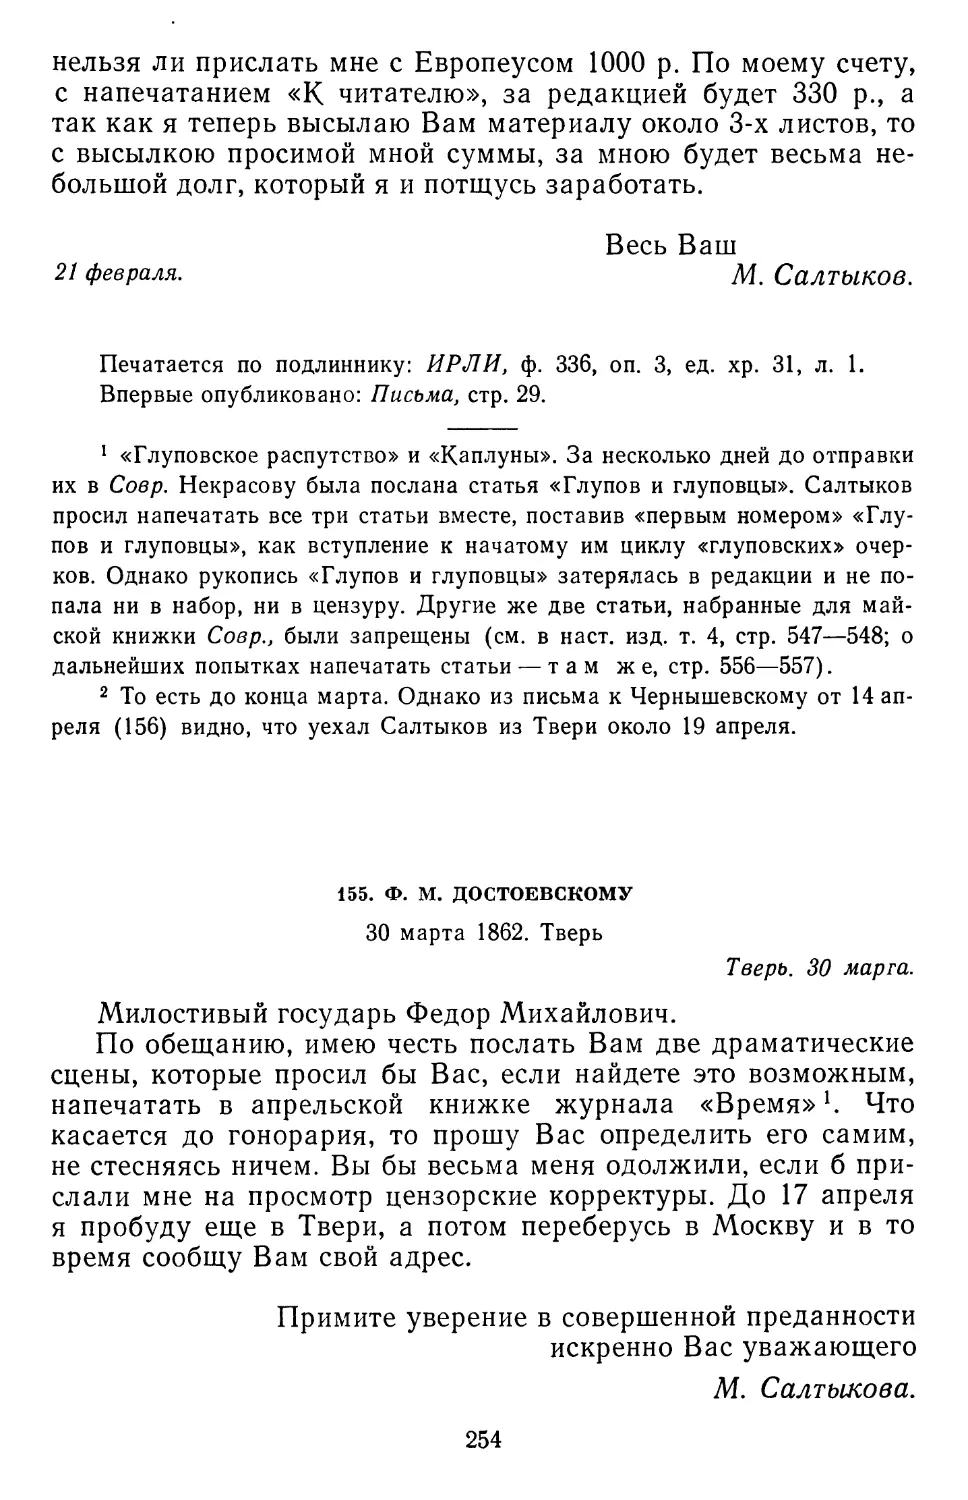 155.Ф.М. Достоевскому. 30 марта 1862. Тверь